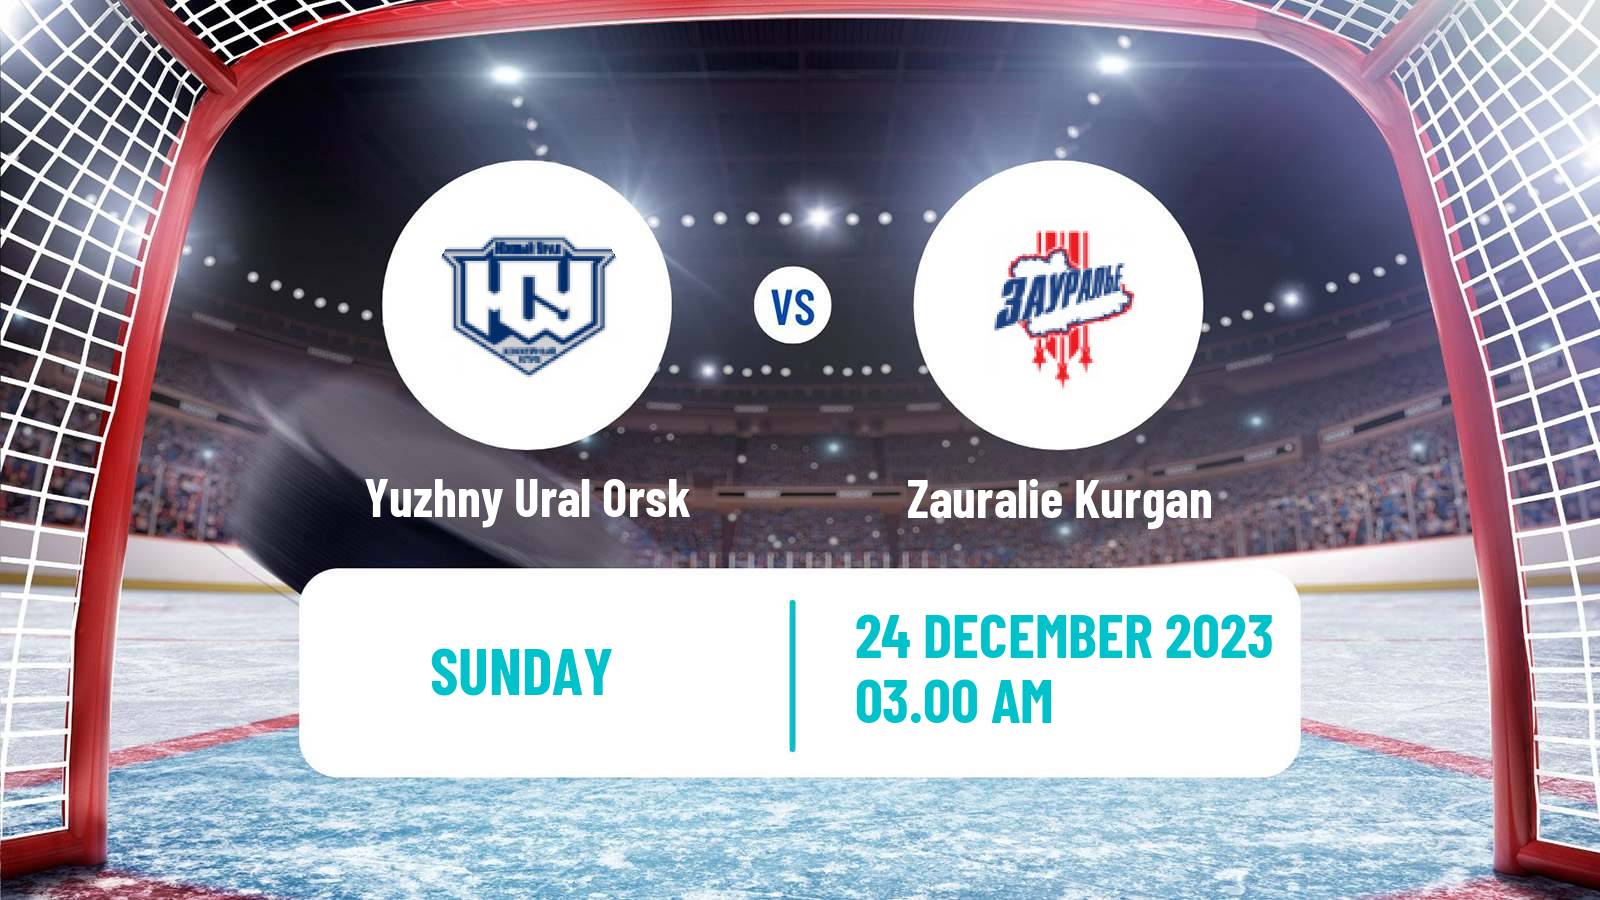 Hockey VHL Yuzhny Ural Orsk - Zauralie Kurgan